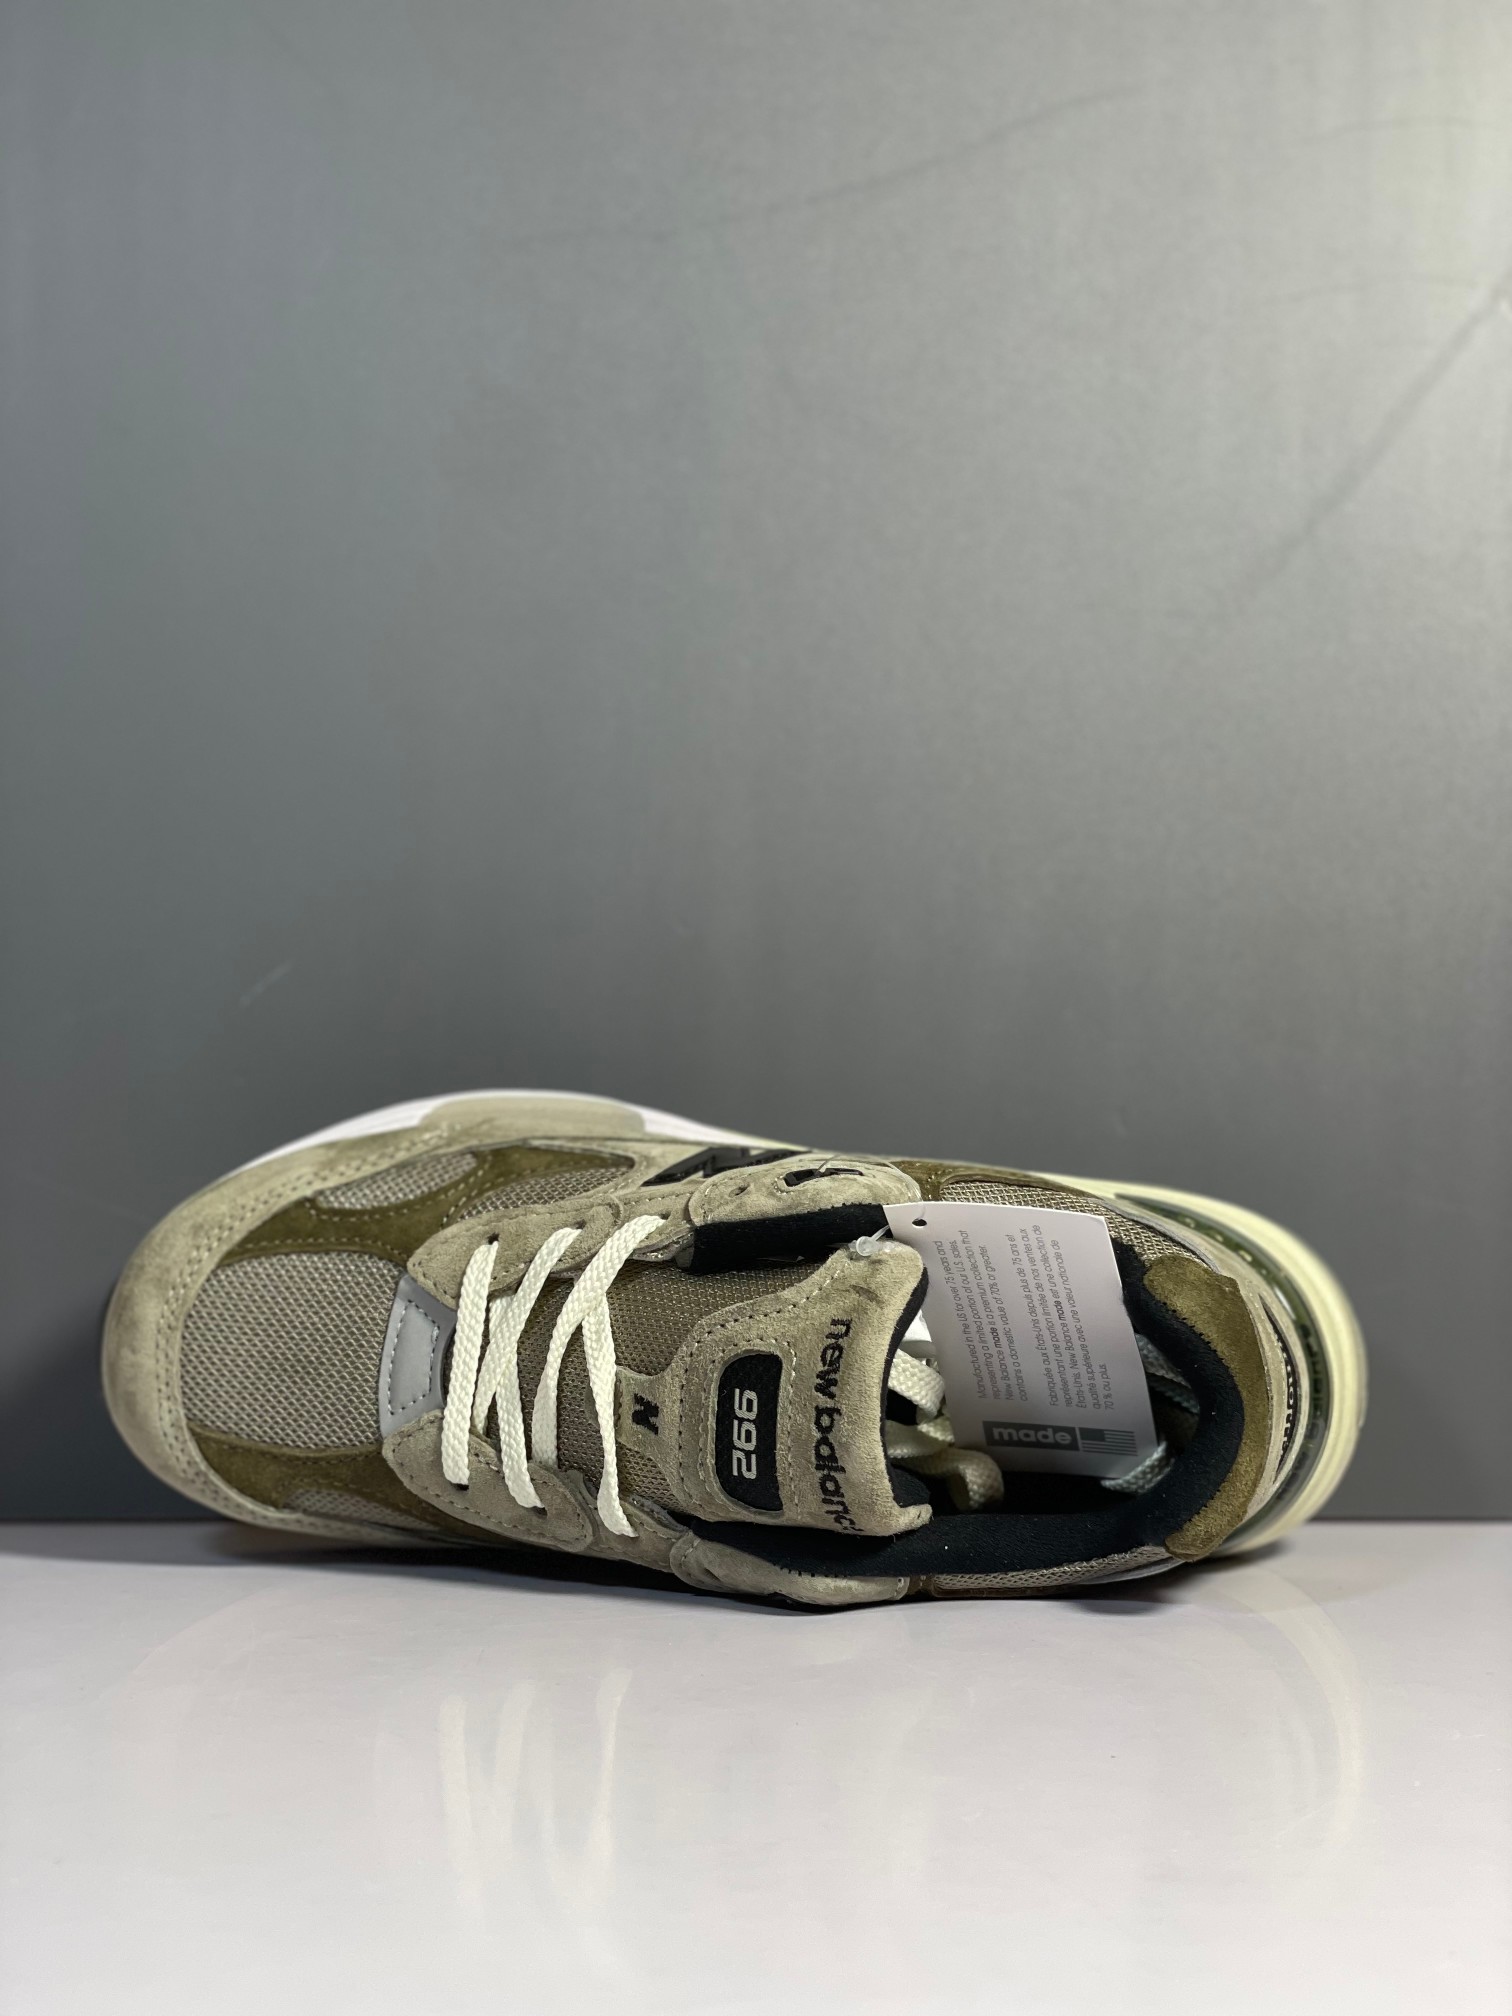 NB992联名款M992J2外贸纯原版全码出货绿棕色全市场唯一原鞋开发全鞋使用原材料打造大底单独开模打造